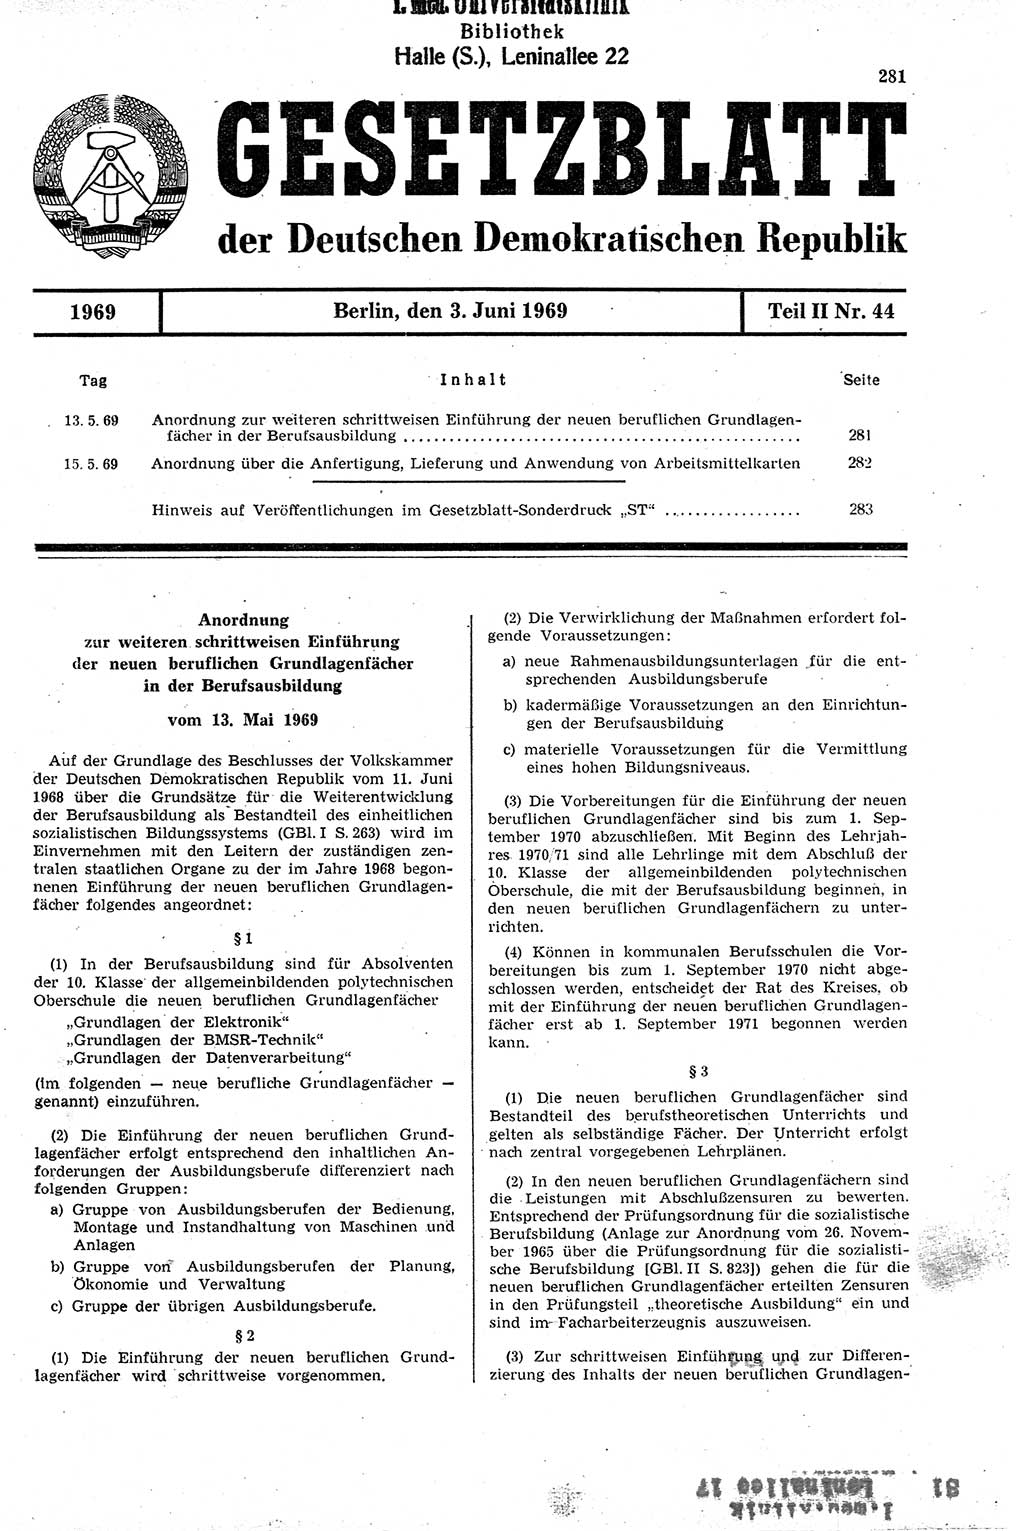 Gesetzblatt (GBl.) der Deutschen Demokratischen Republik (DDR) Teil ⅠⅠ 1969, Seite 281 (GBl. DDR ⅠⅠ 1969, S. 281)